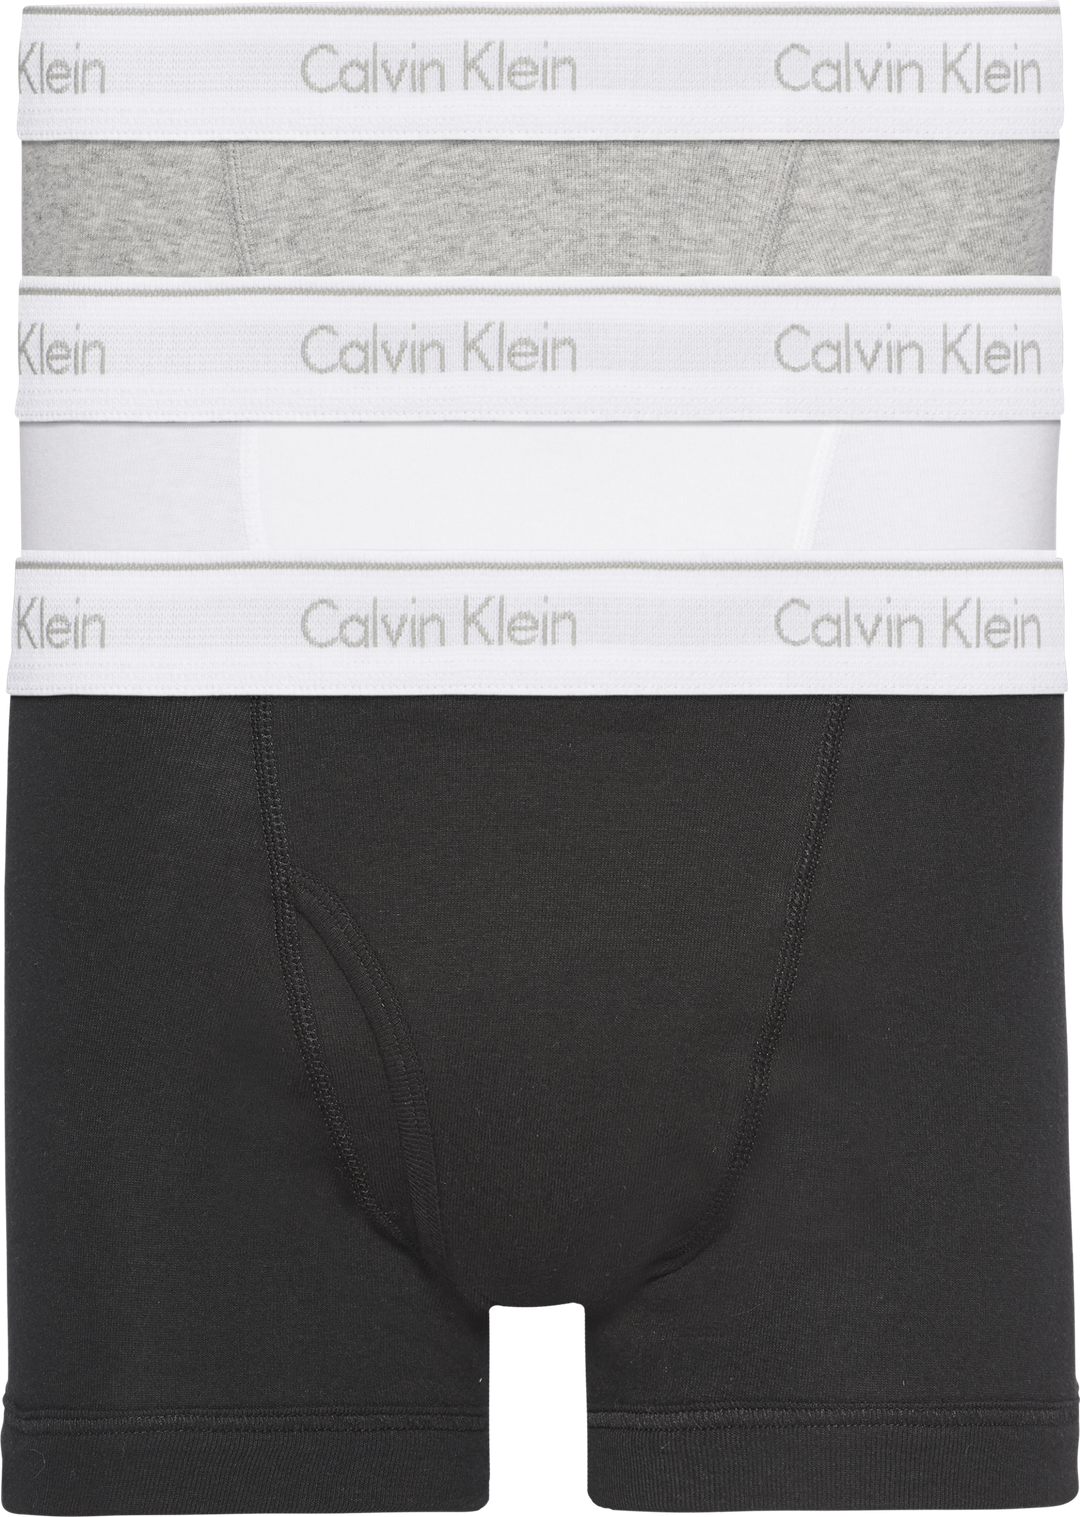 CALVIN KLEIN UNDERWEAR - TRUNK 3PK Black/White/Grey - Dale